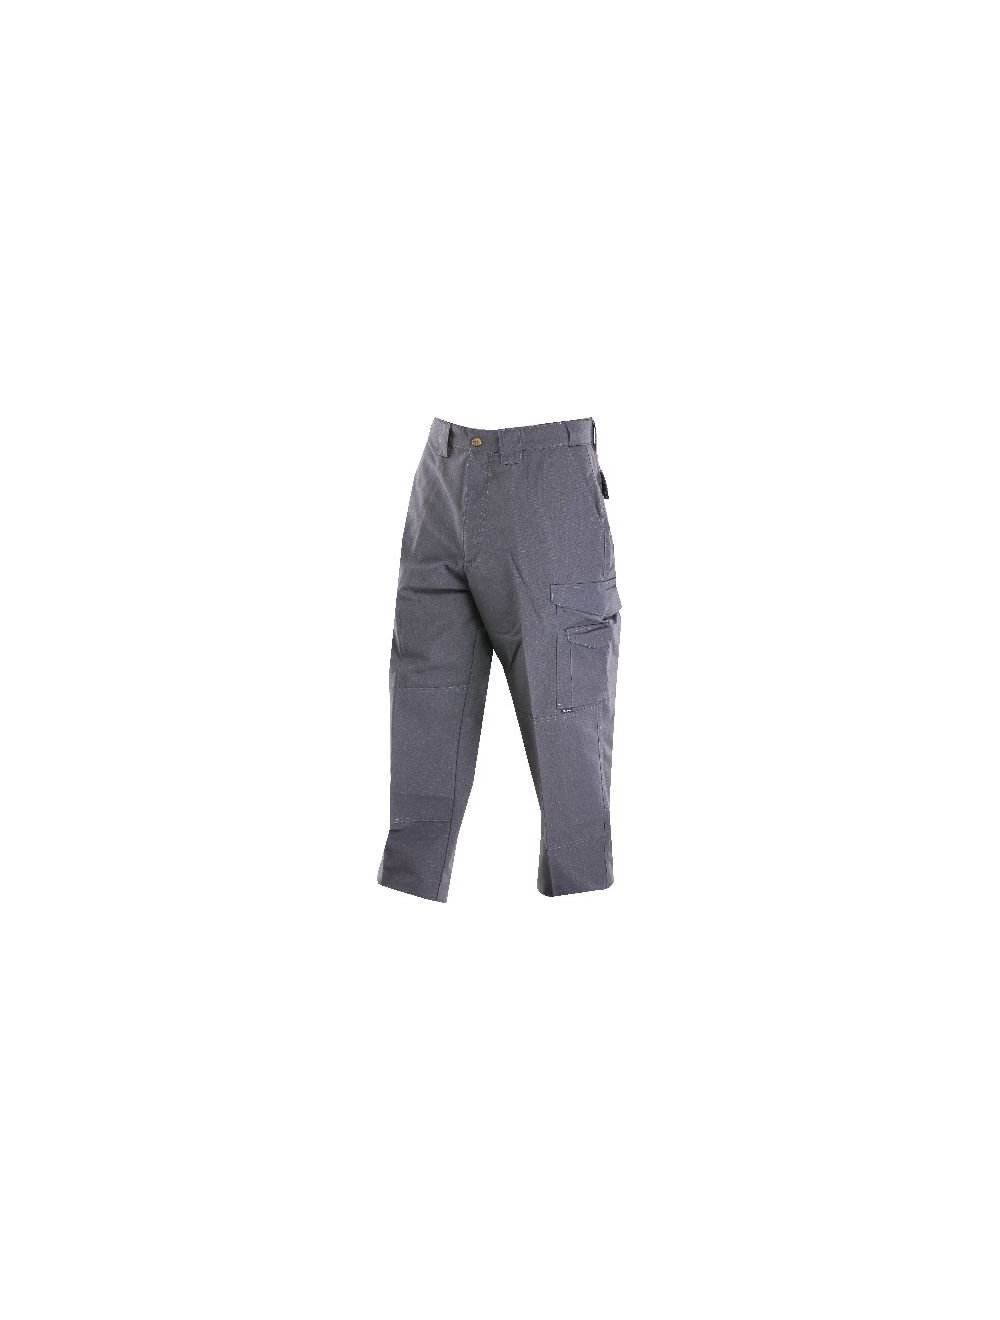 24-7 Original Tactical Pants - 6.5oz - Charcoal